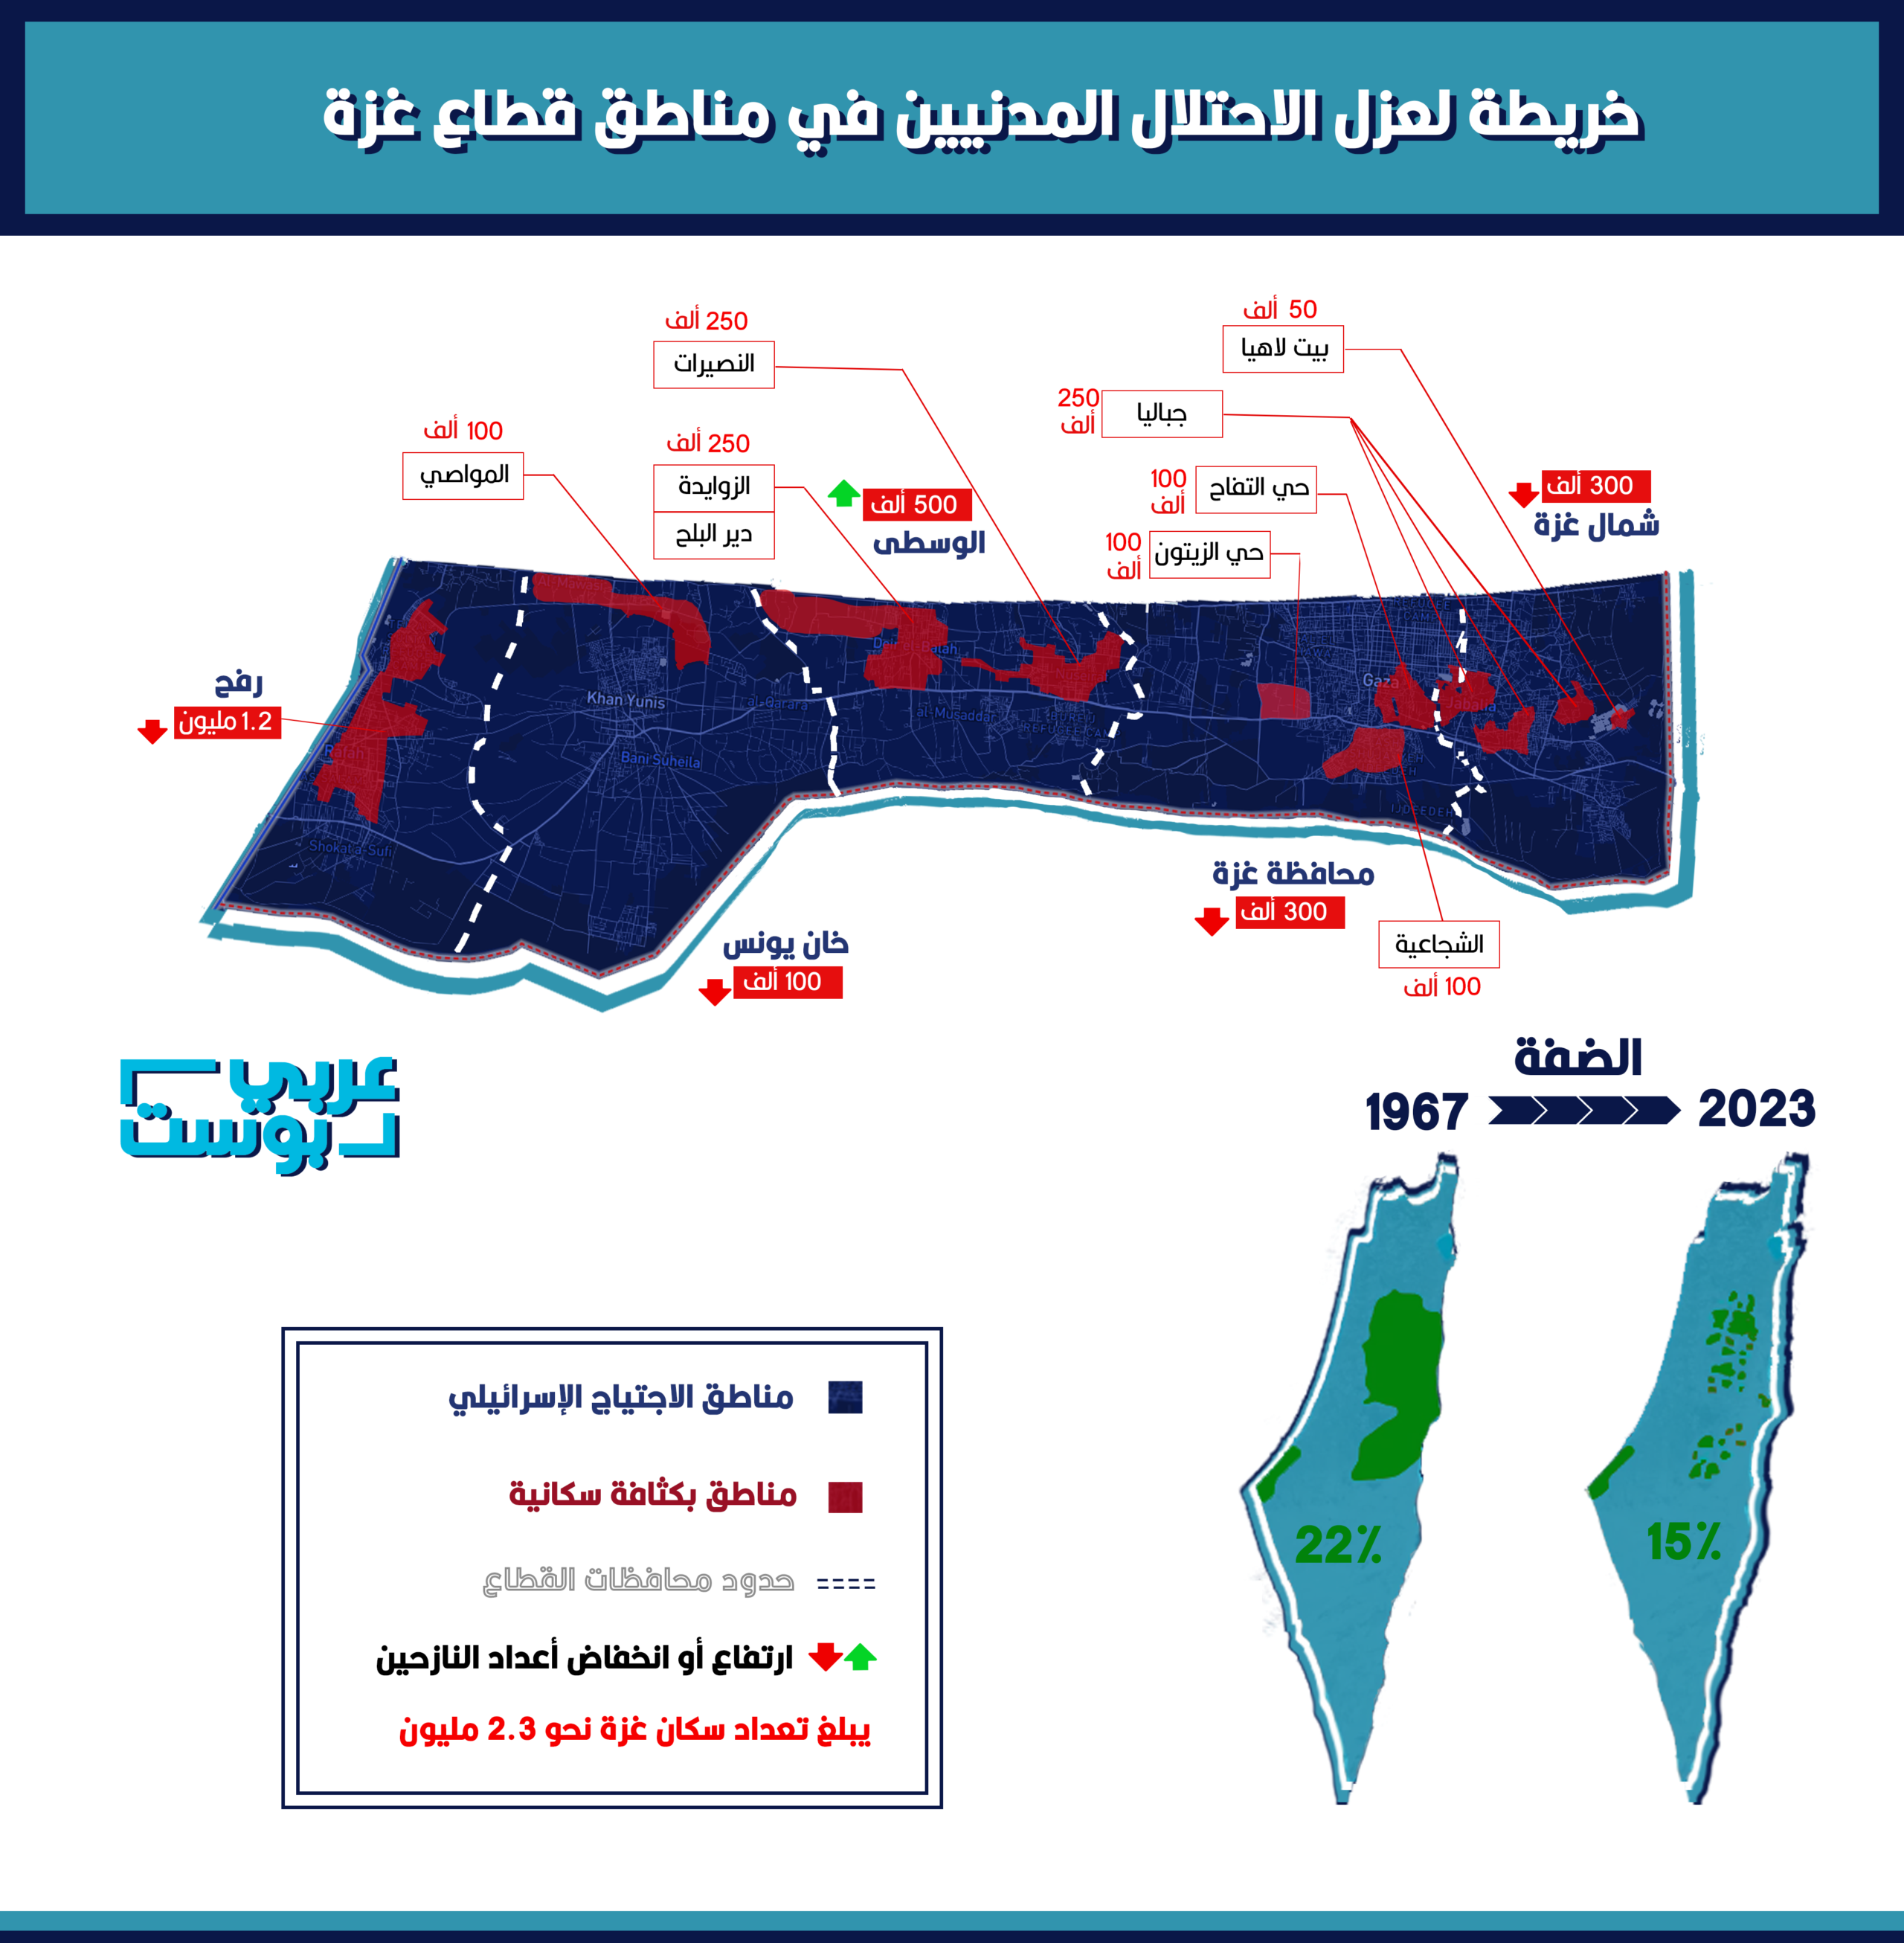 خريطة لتقلص مساحة غزة بالنسبة للسكان بفعل النزوح والاجتياح الإسرائيلي - عربي بوست